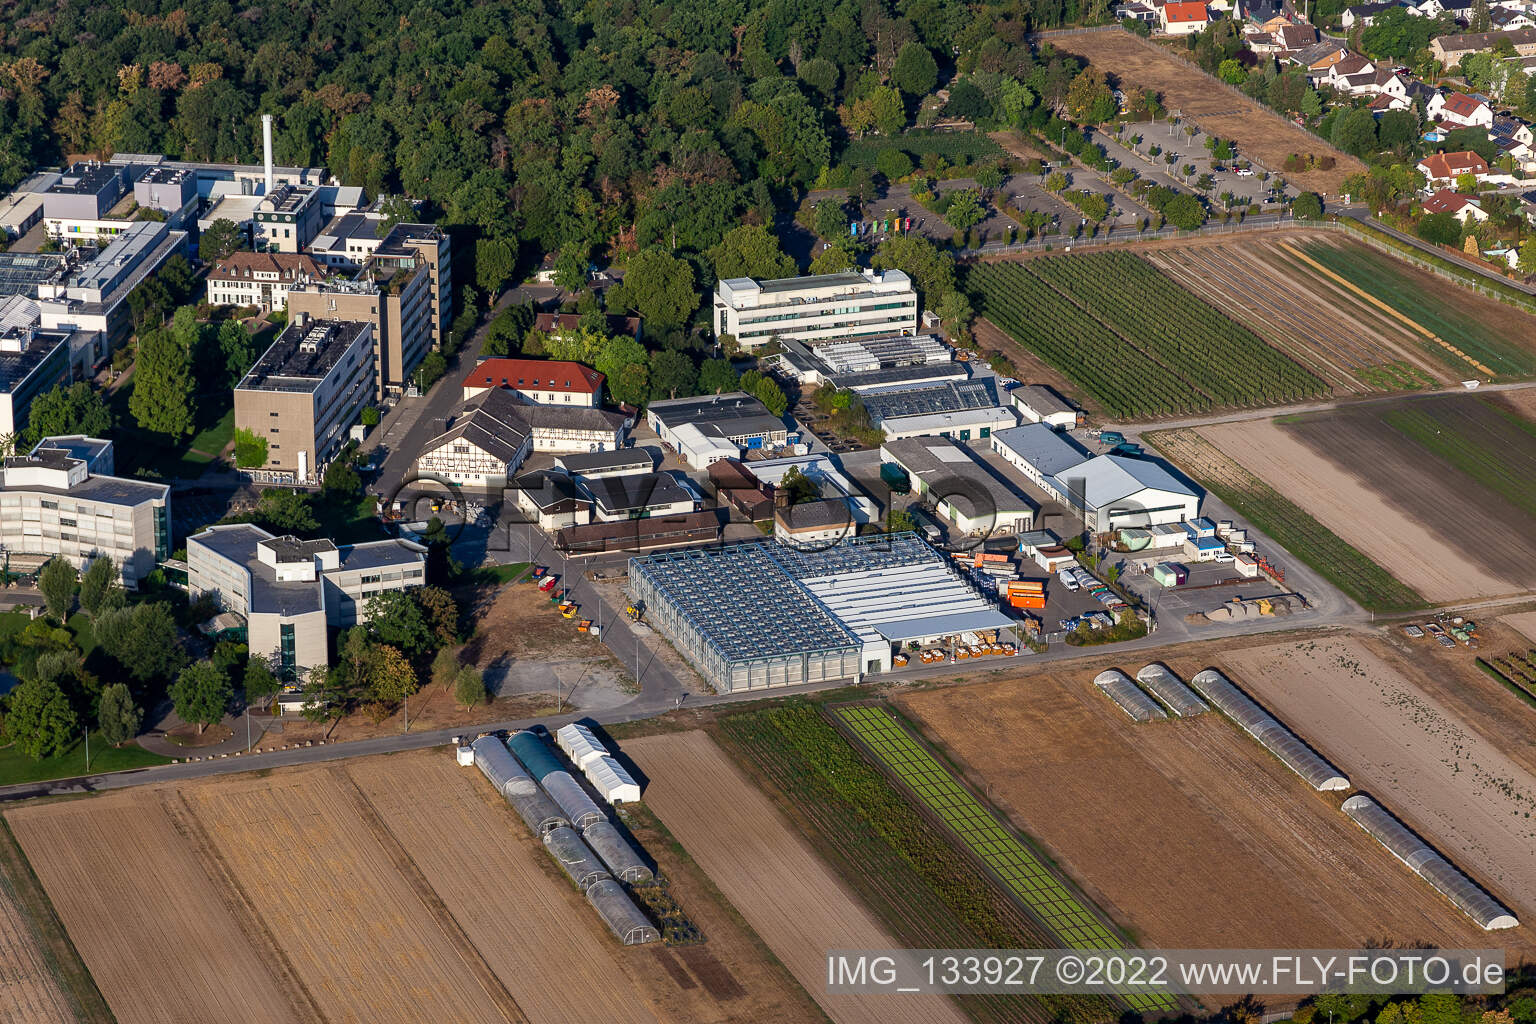 Centre agricole BASF à Limburgerhof dans le département Rhénanie-Palatinat, Allemagne vue d'en haut